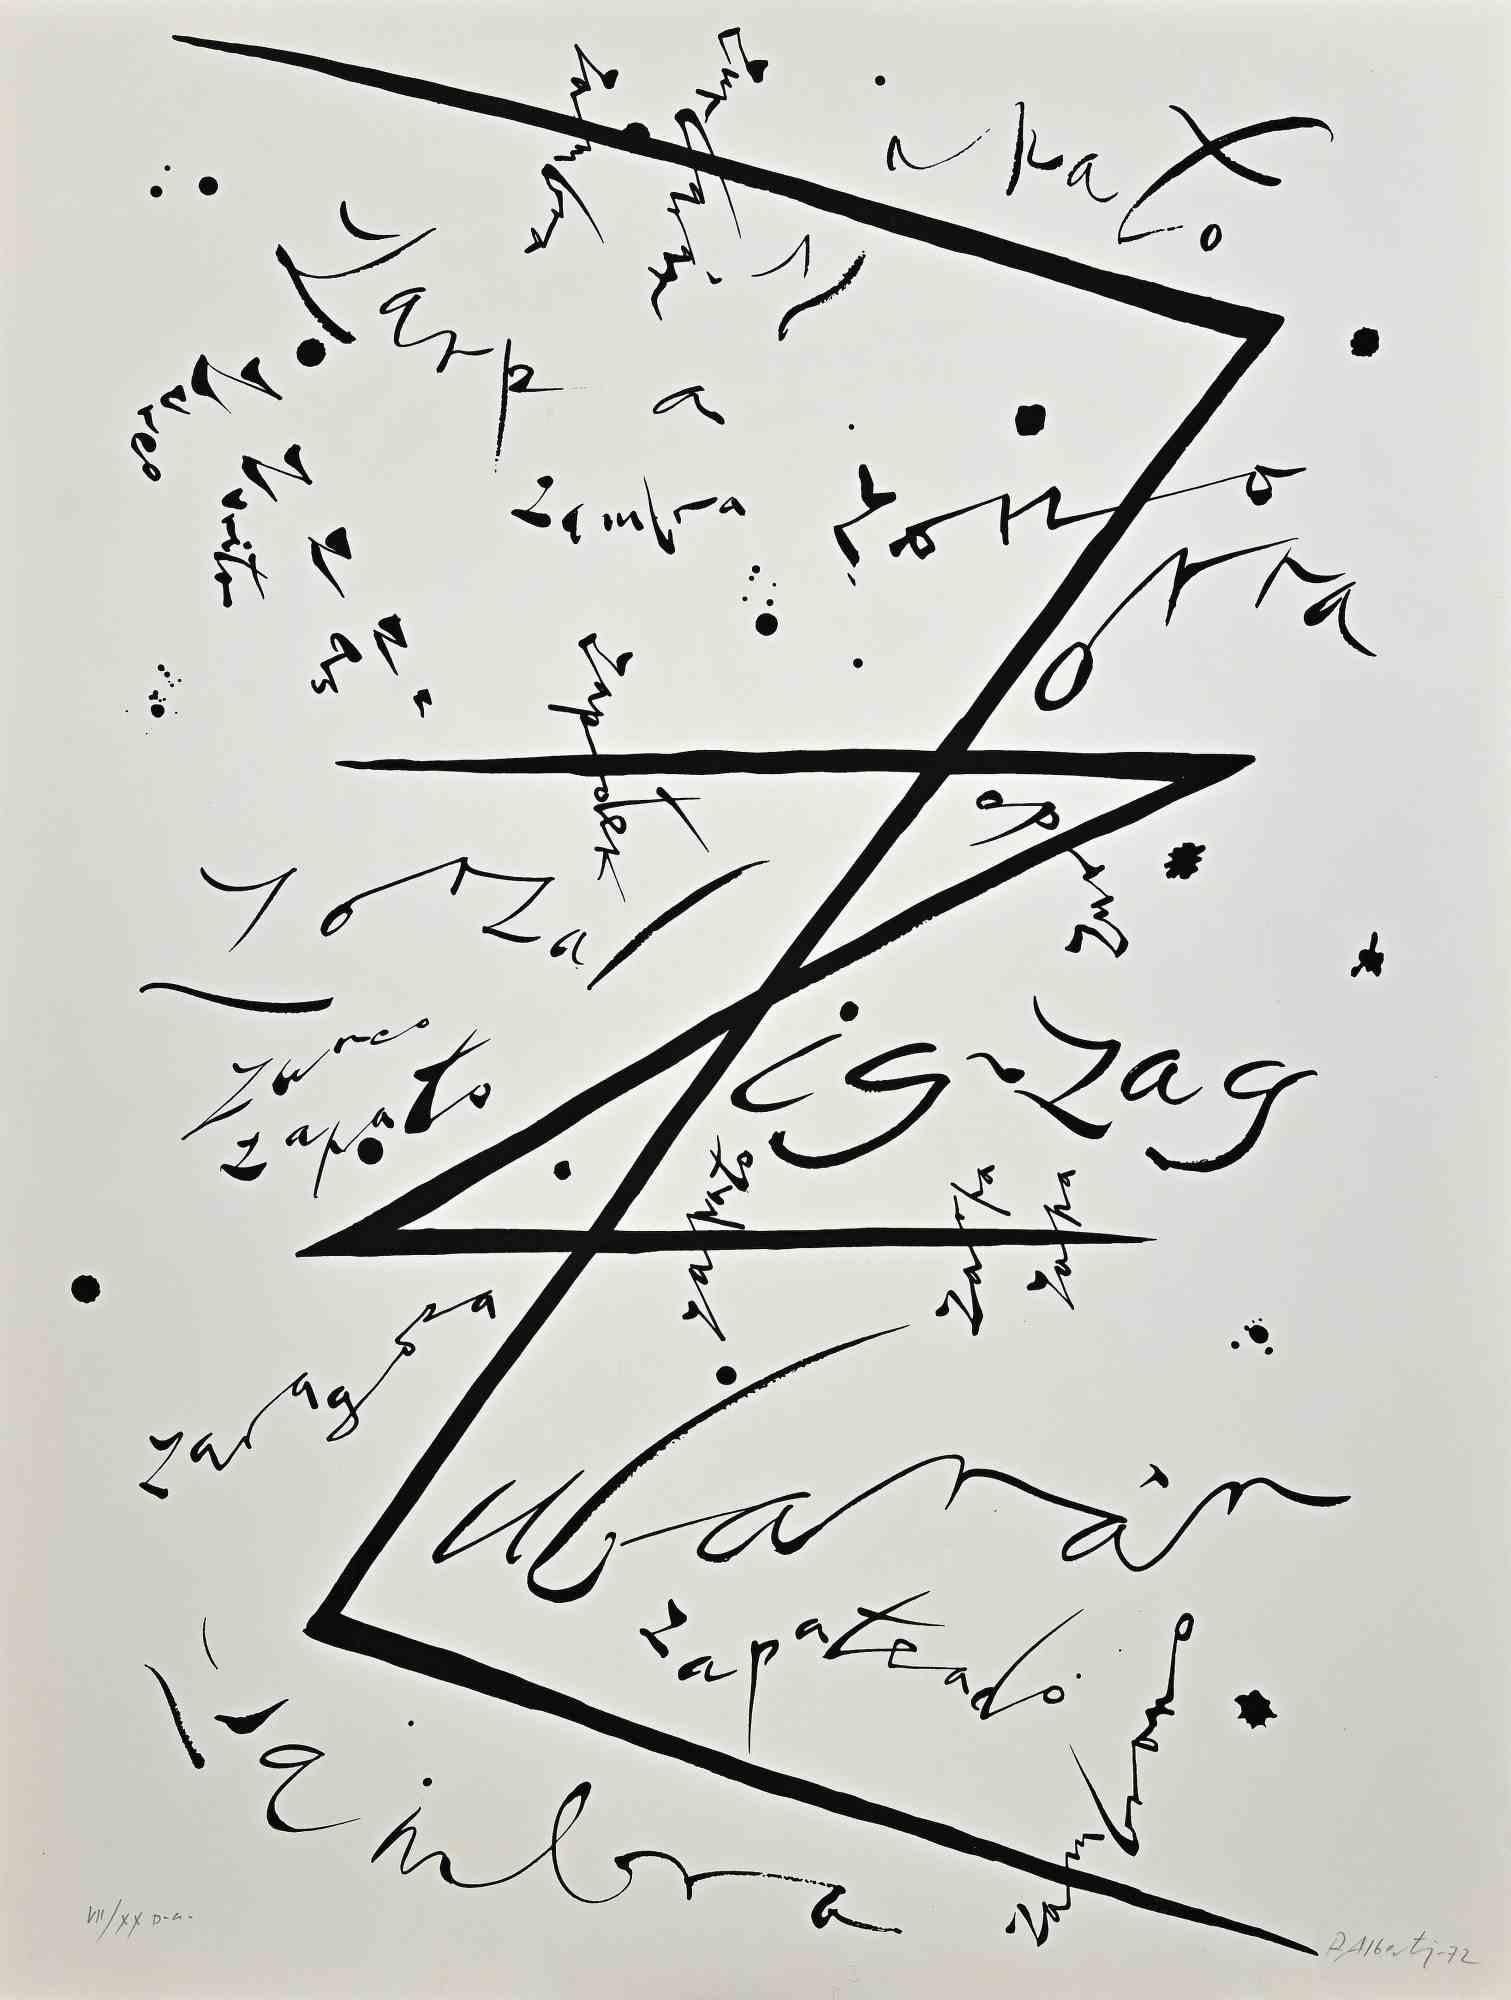 Lettre Z - Lithographie d'Rafraîchissement Alberti - 1972